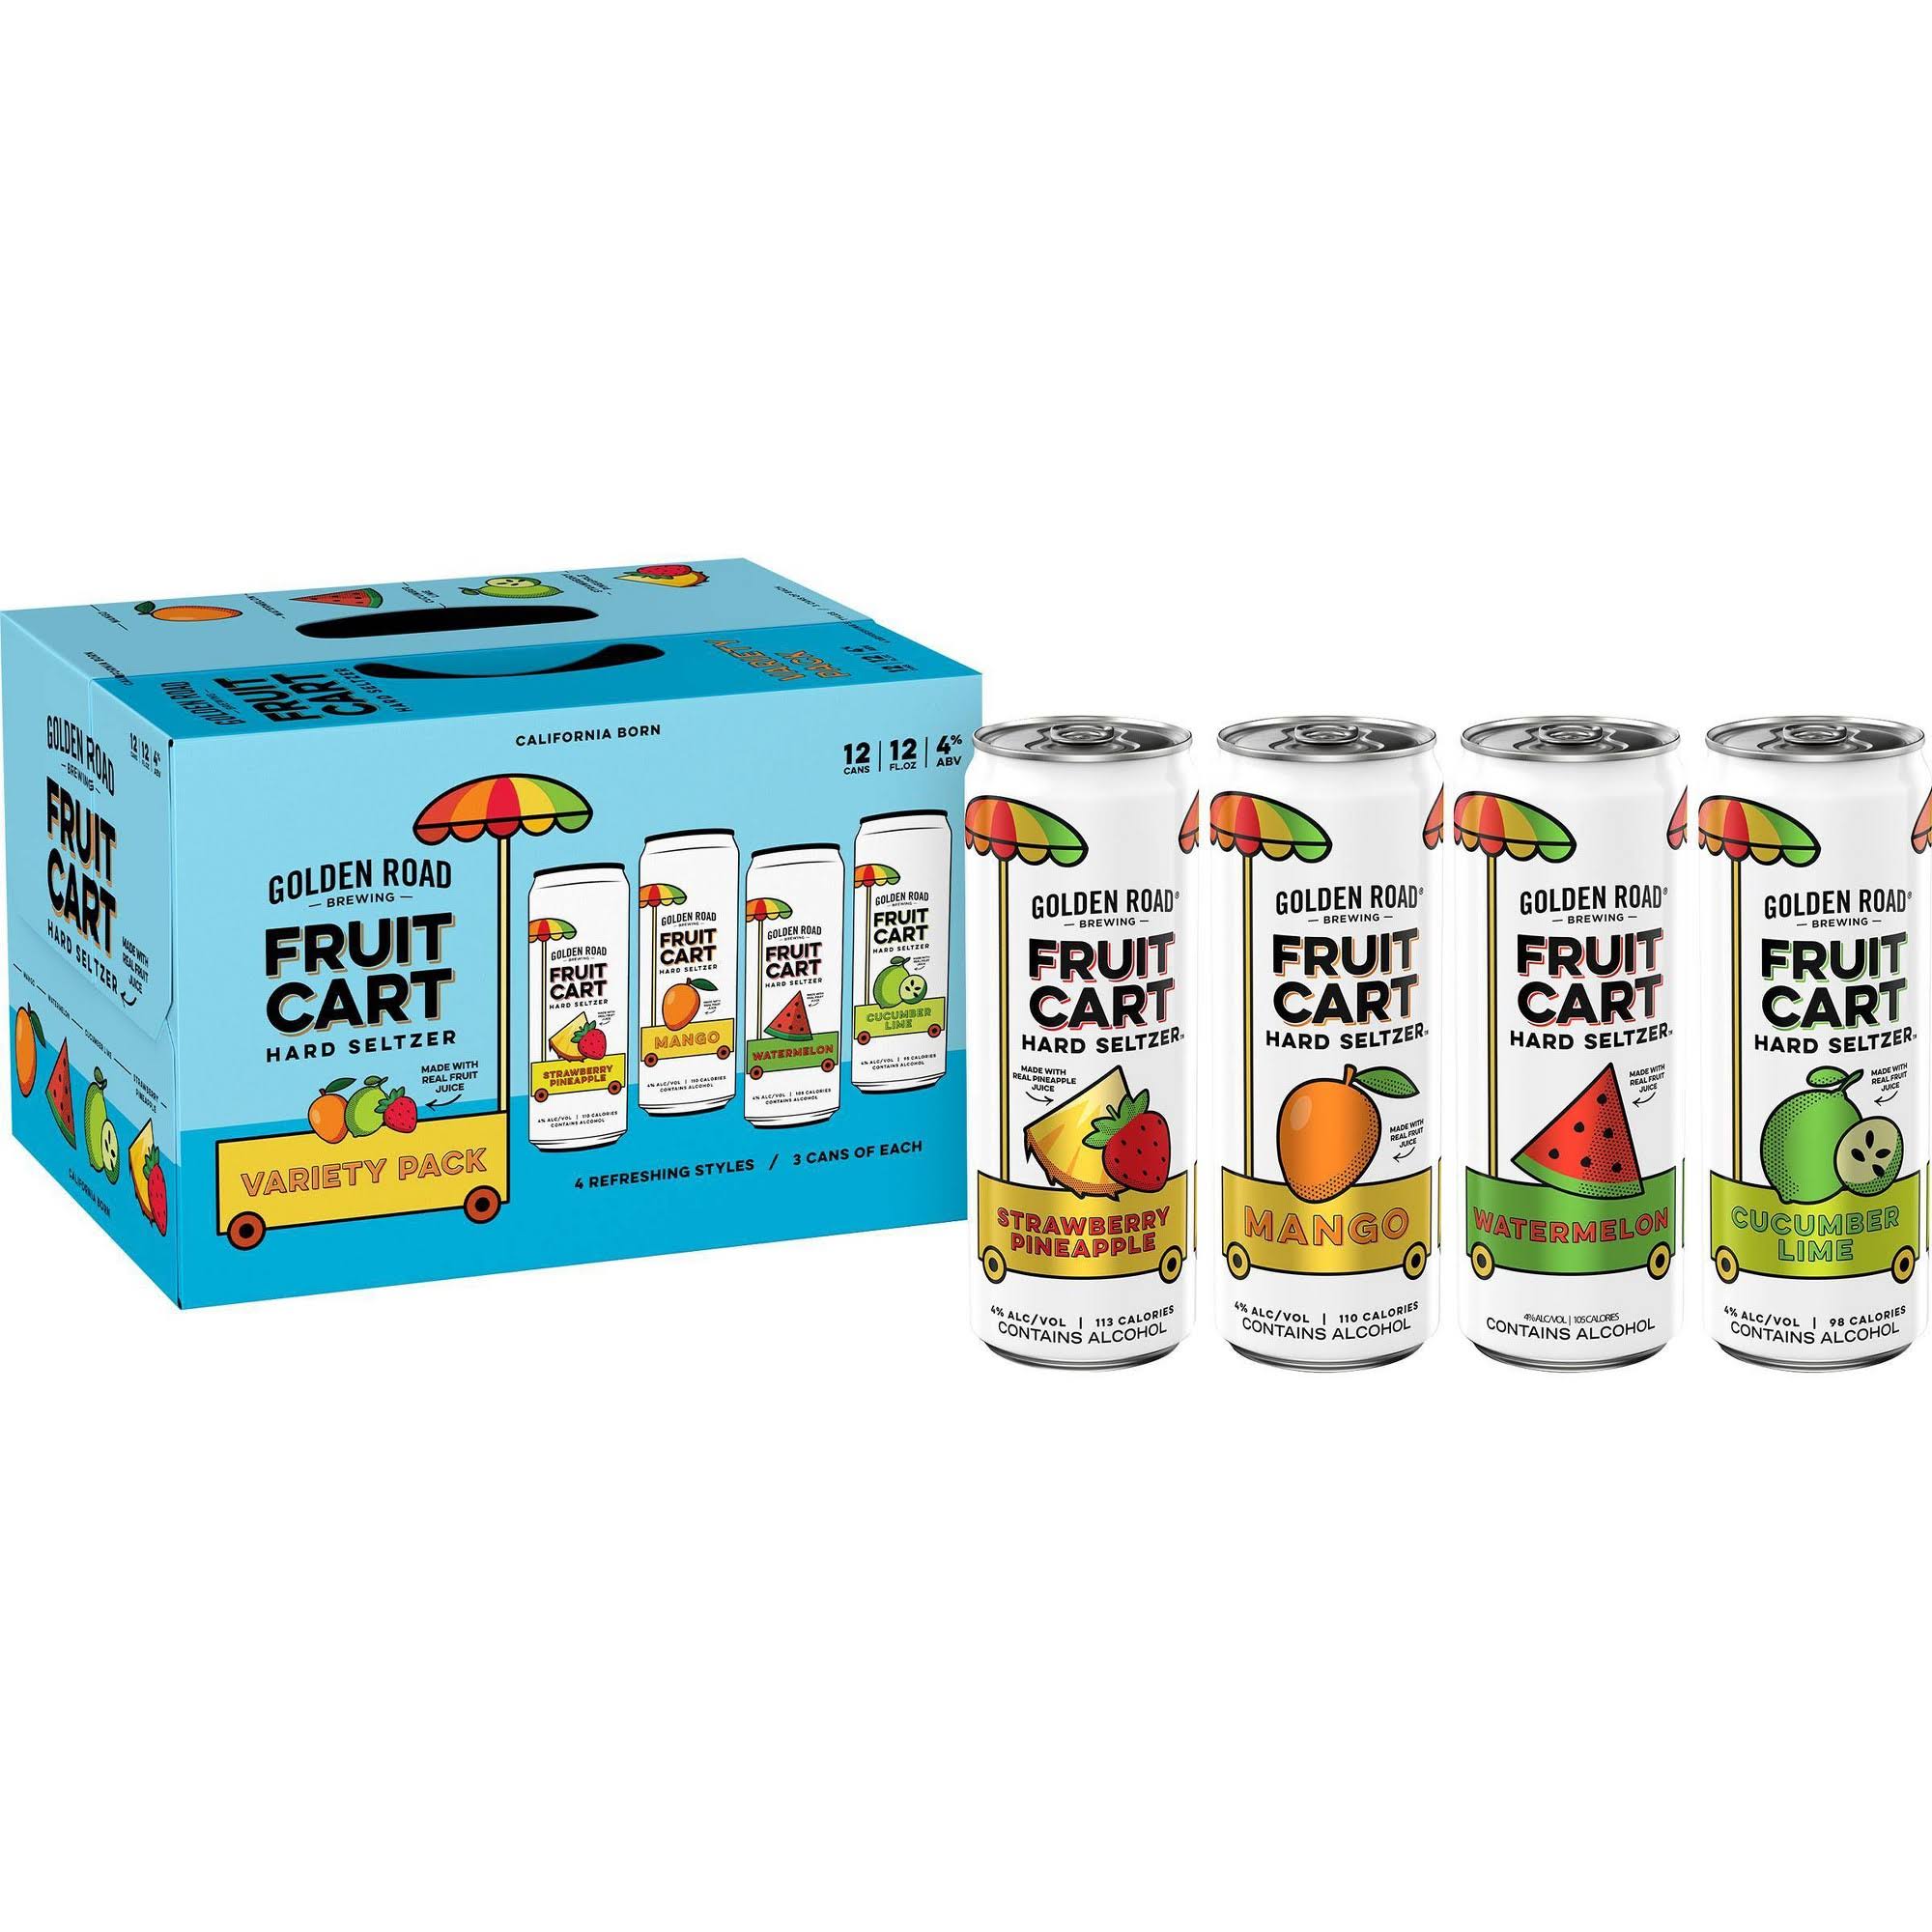 Golden Road Fruit Cart Hard Seltzer, Variety Pack, 12 Pack - 12 cans - 12 fl oz